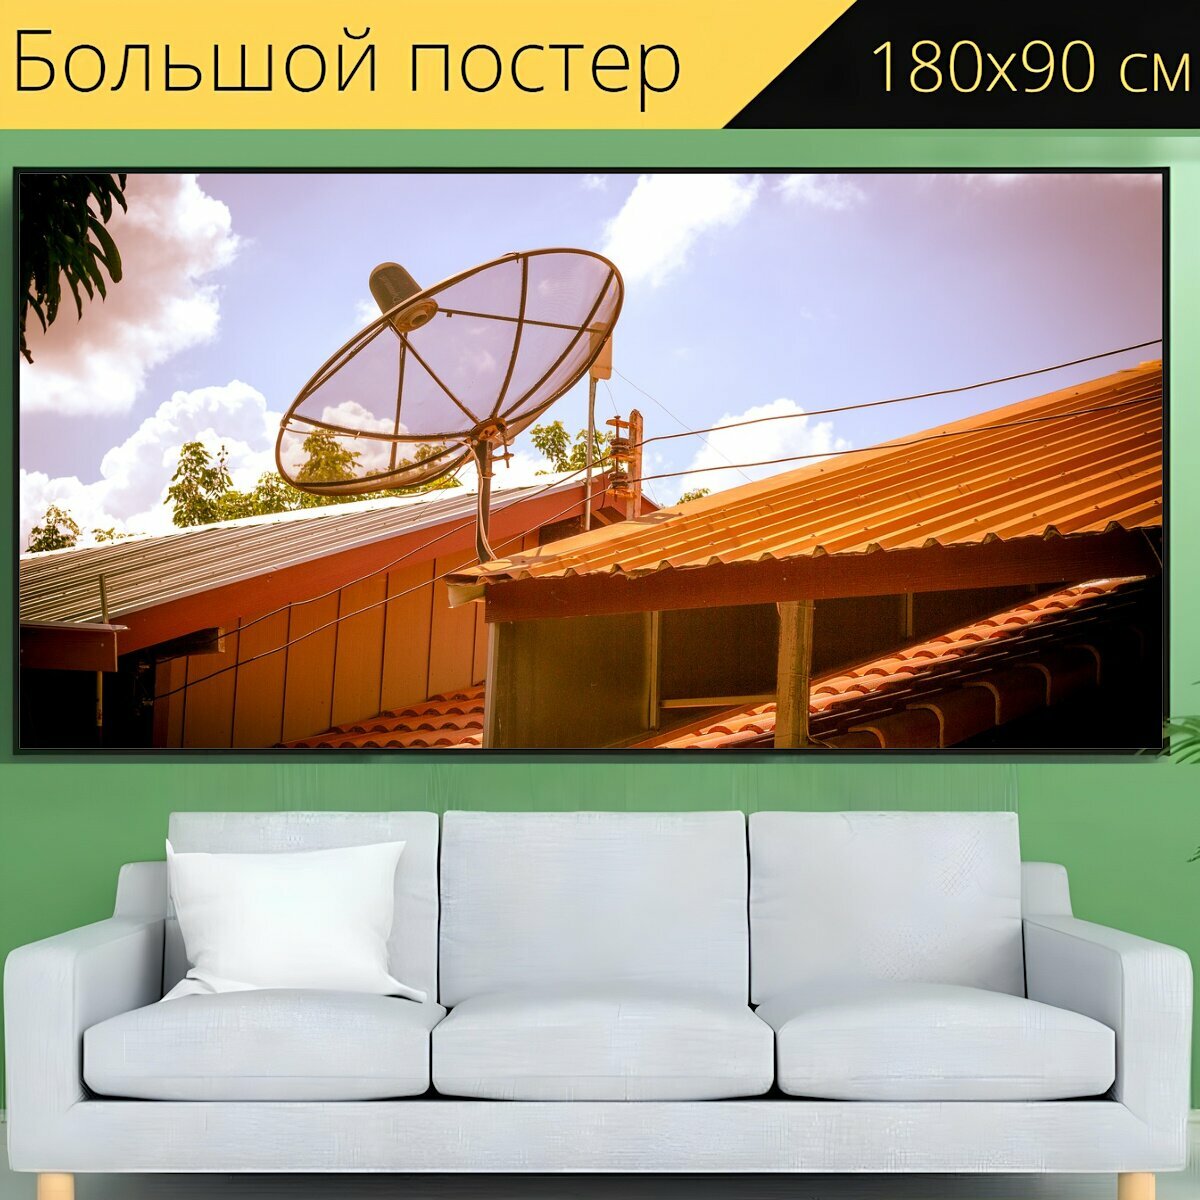 Большой постер "Спутниковая антенна, крыша, телевизор" 180 x 90 см. для интерьера